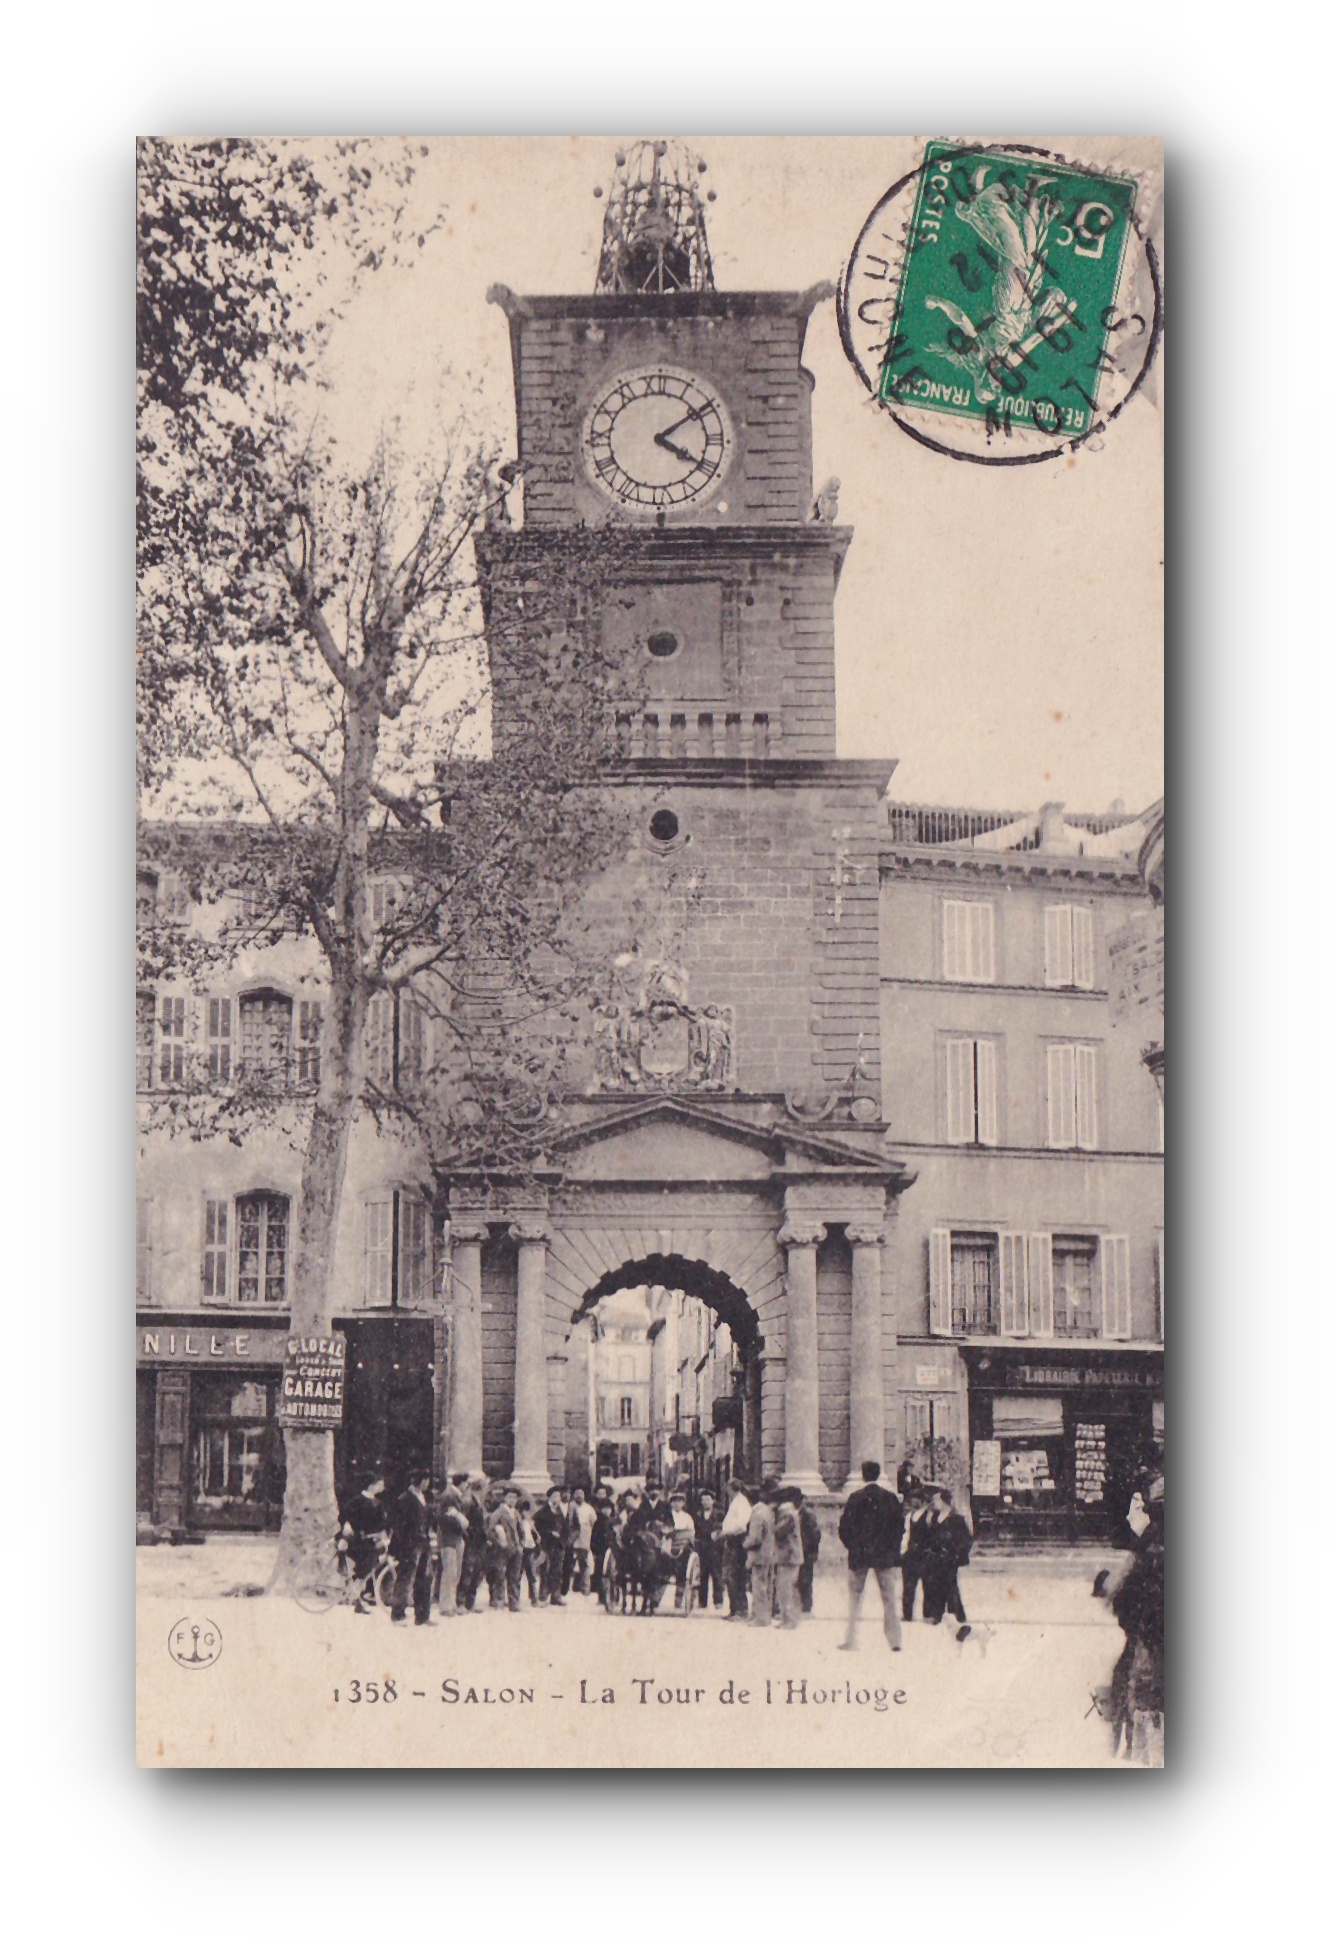 - La Tour de l'Horloge - SALON - 17.06.1912 -